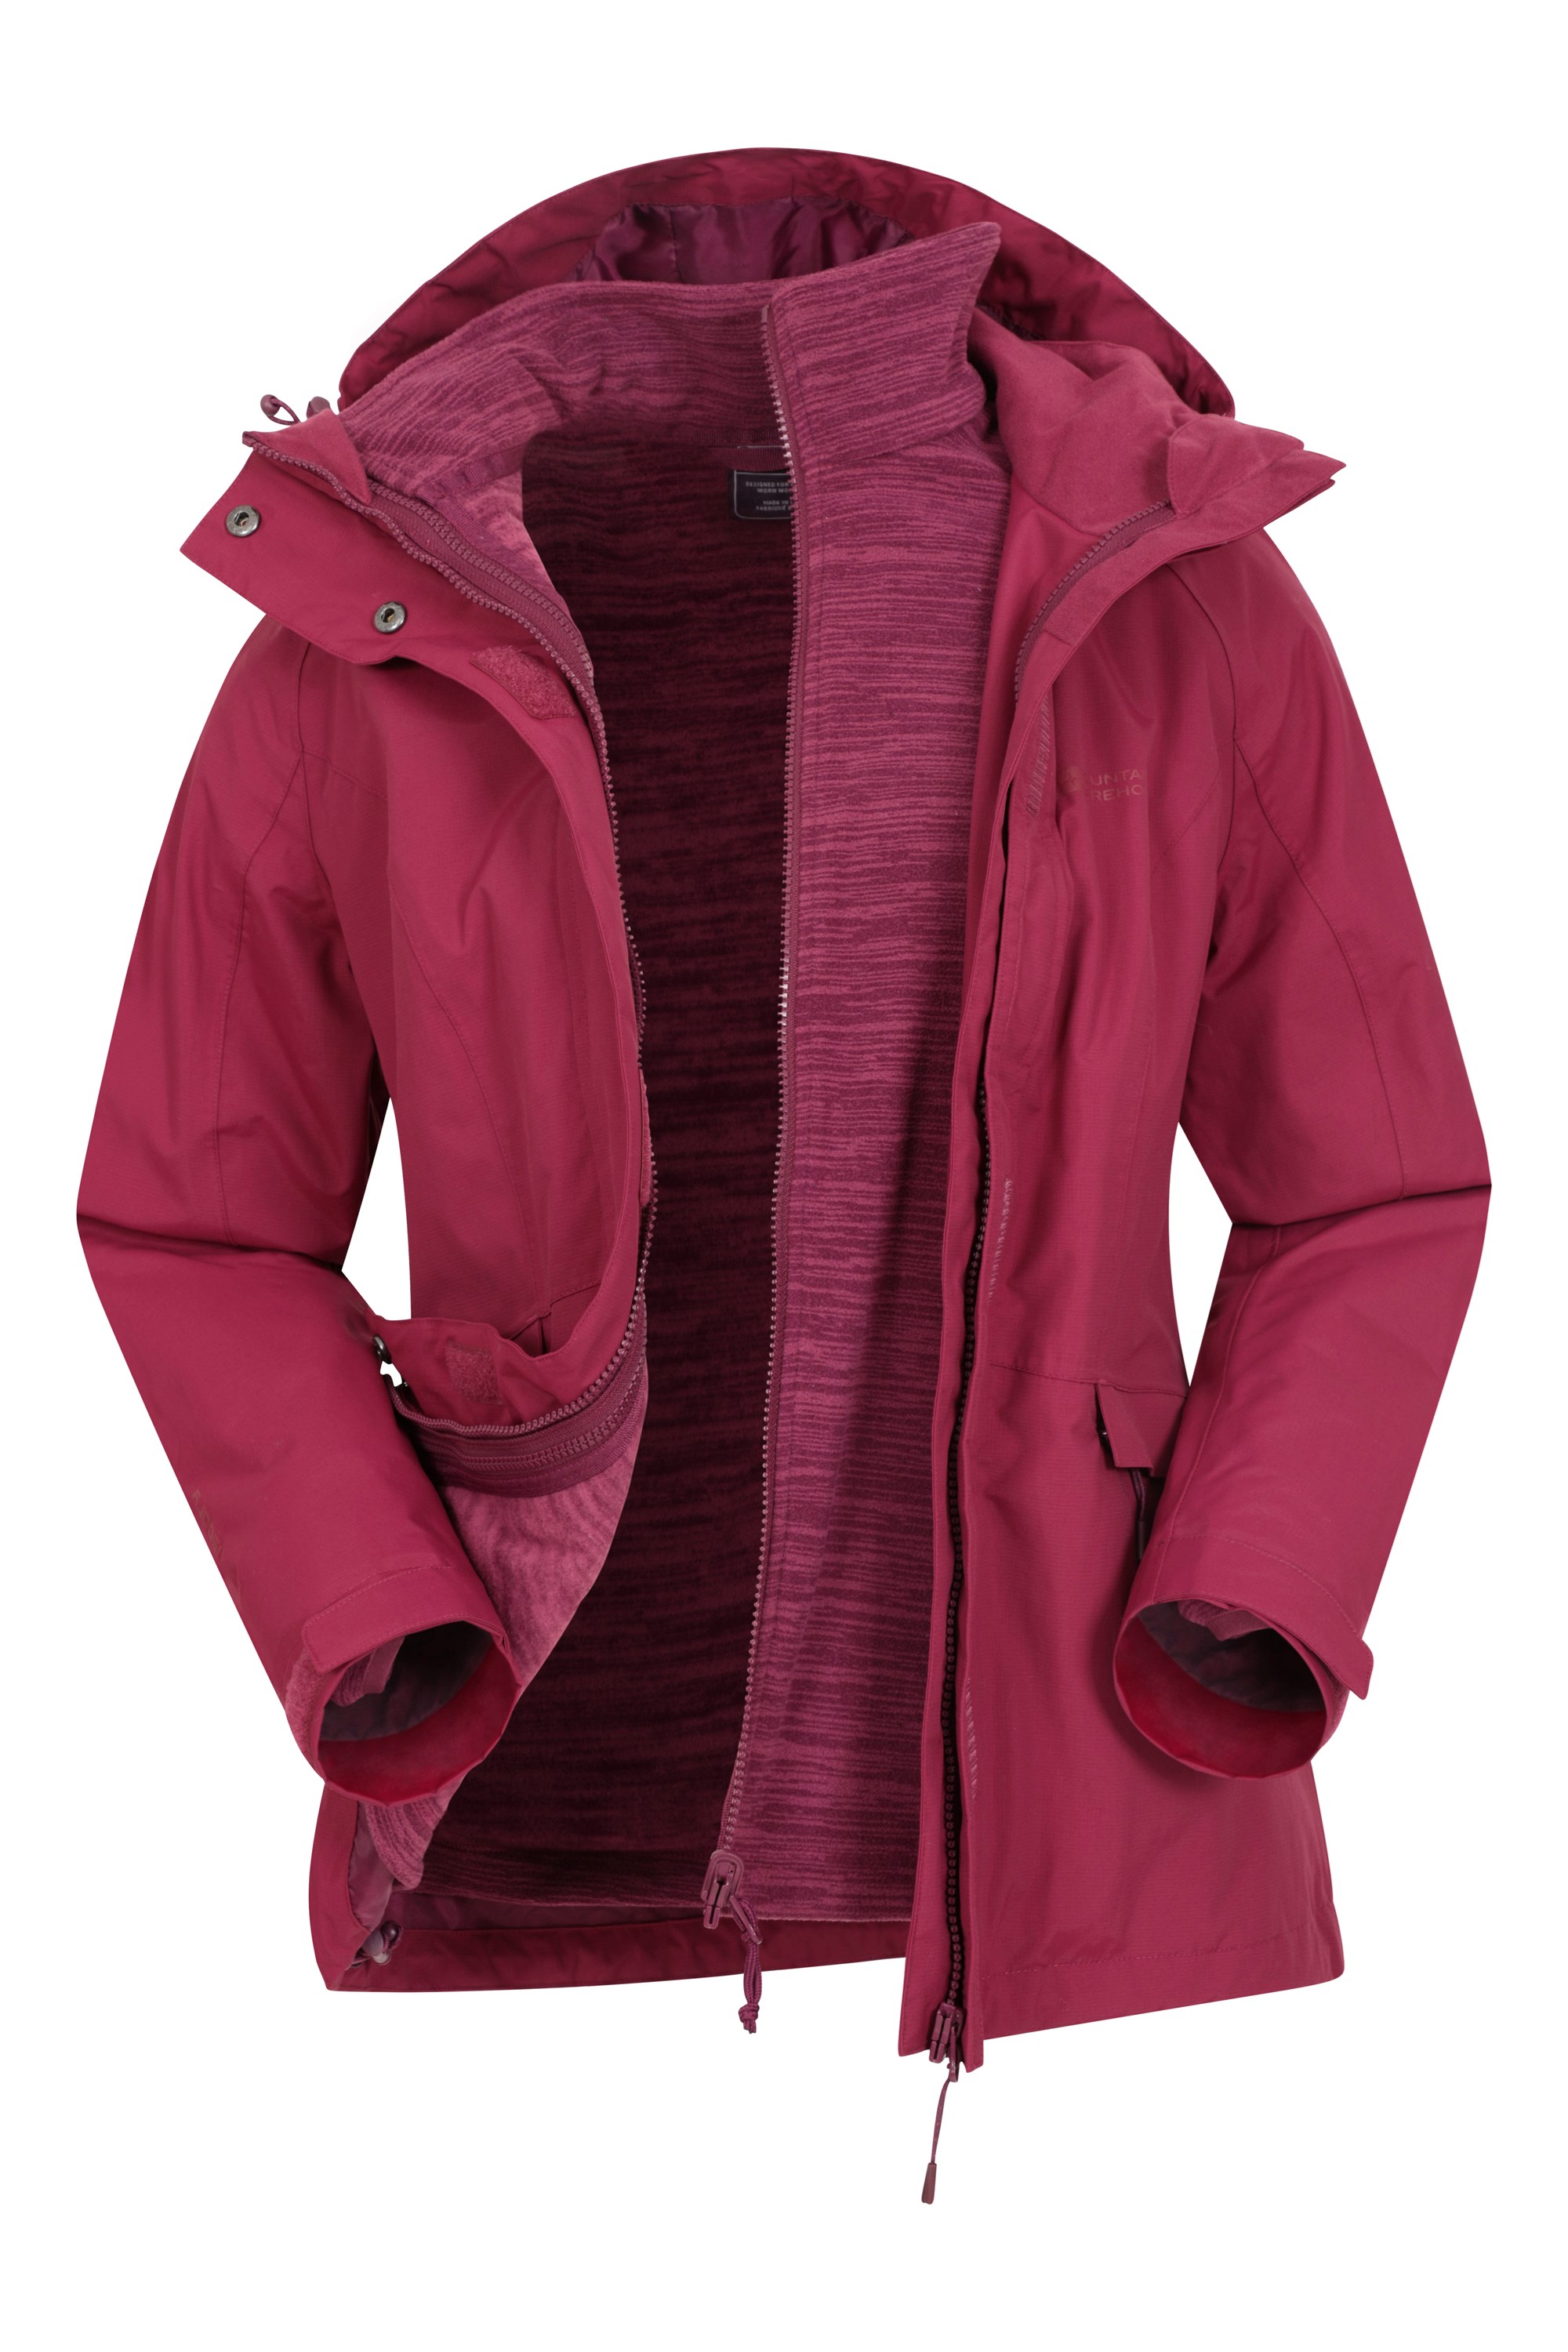 TACVASEN Women's 3-in-1 Ski Jacket Waterproof Snowboard Fleece Inner with Detachable Hood 